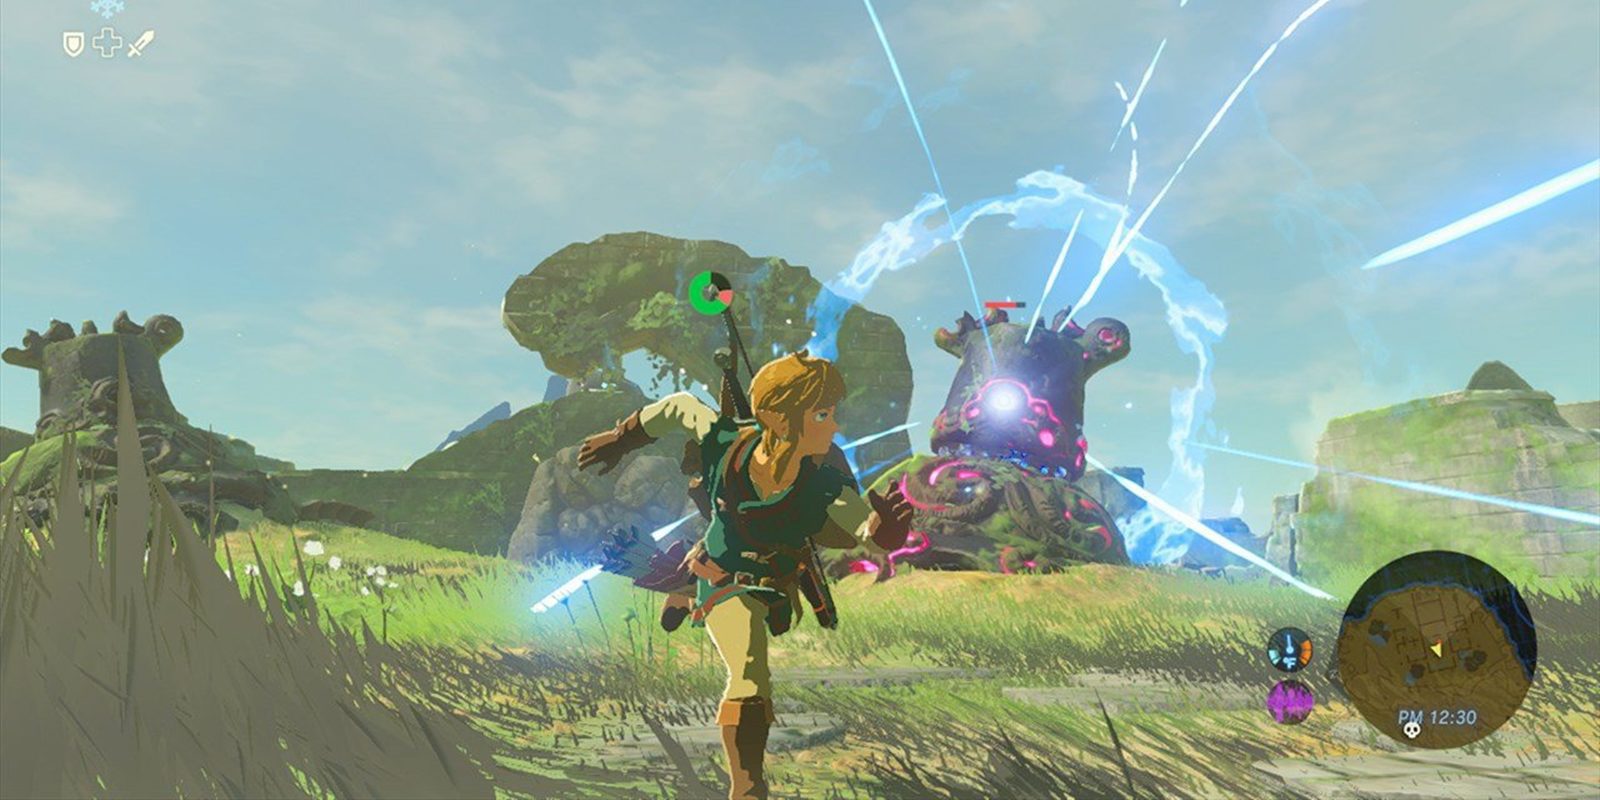 Reggie cree que han llegado al corazón de la gente con 'Zelda: Breath of the Wild'